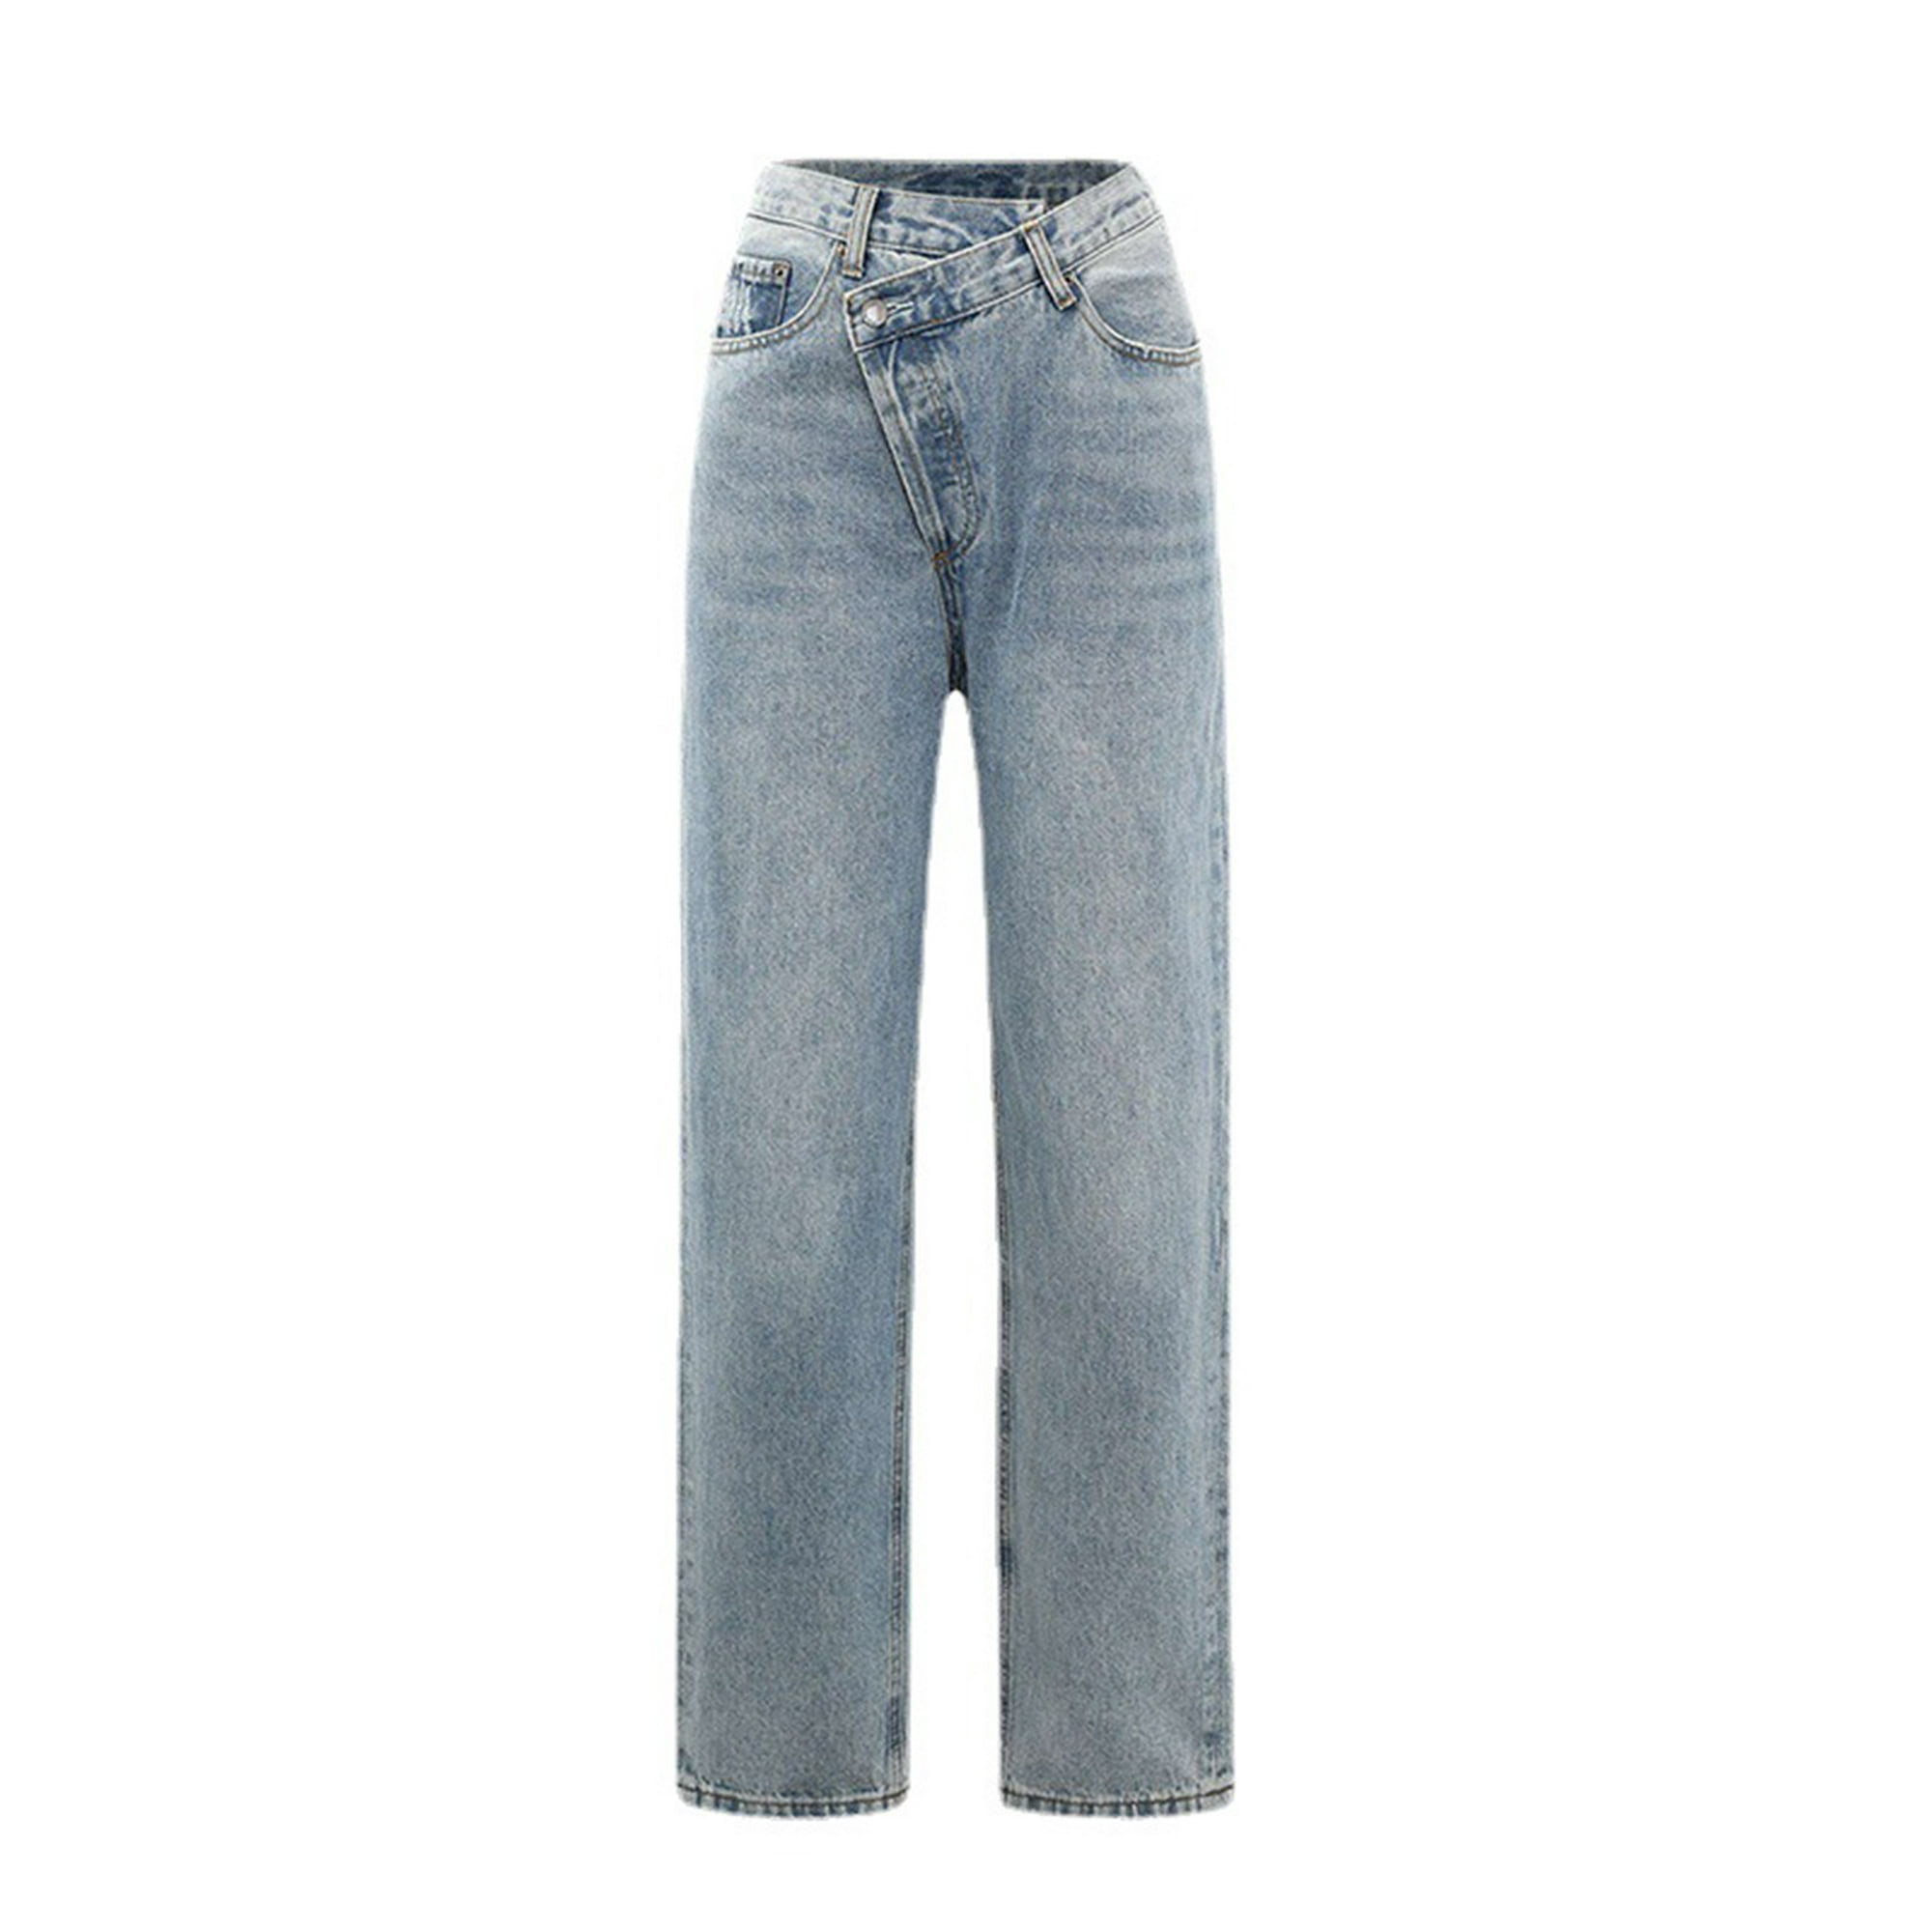 Gibobby Jeans dama cintura alta Pantalones estampados Pantalones de Jeans  Casual Mujer Pantalones largos con correa de bolsillo(Azul oscuro,G)